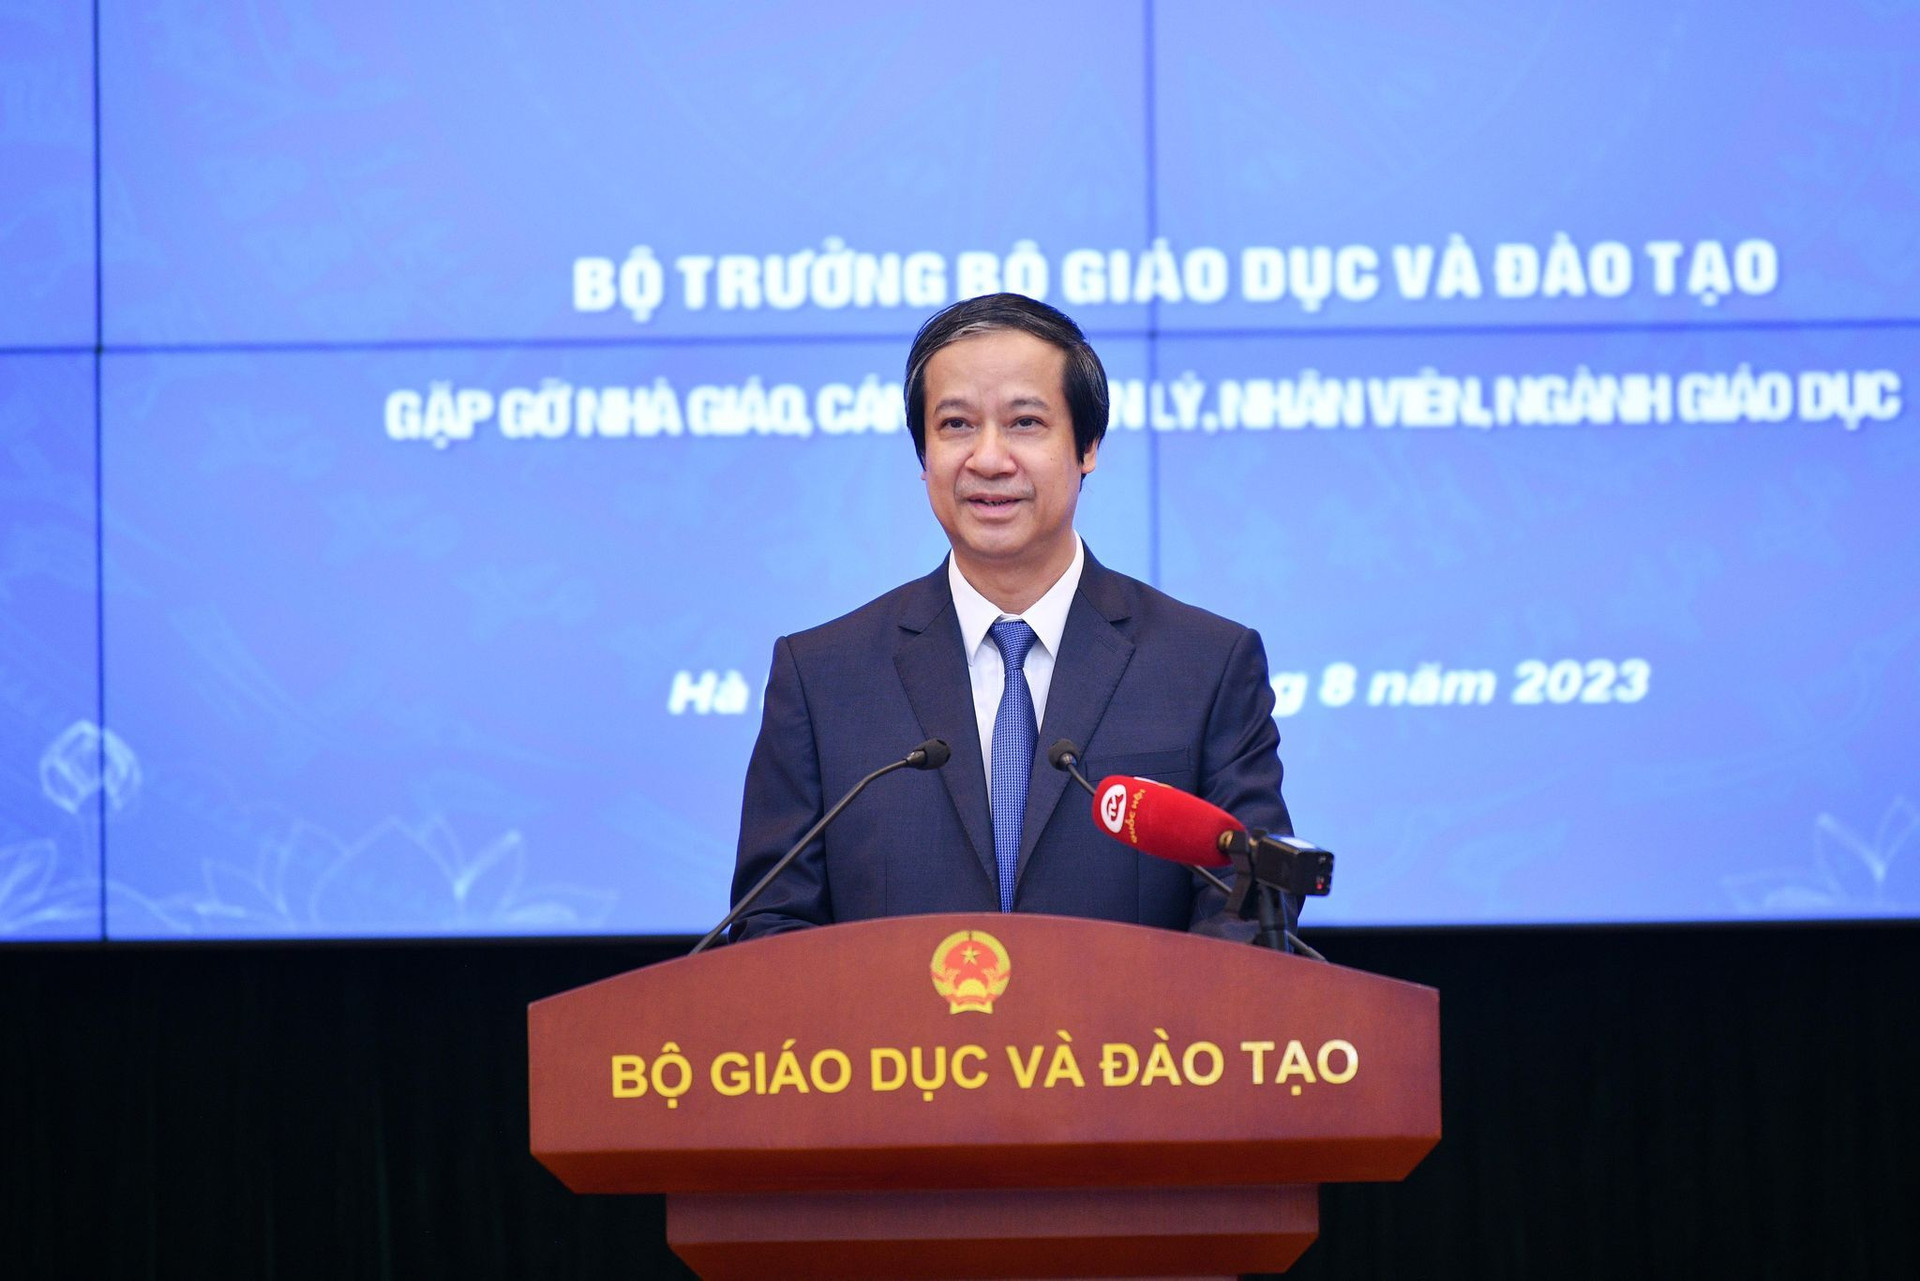 Bộ trưởng GD&ĐT Nguyễn Kim Sơn phát biểu ý kiến sáng 15/8.